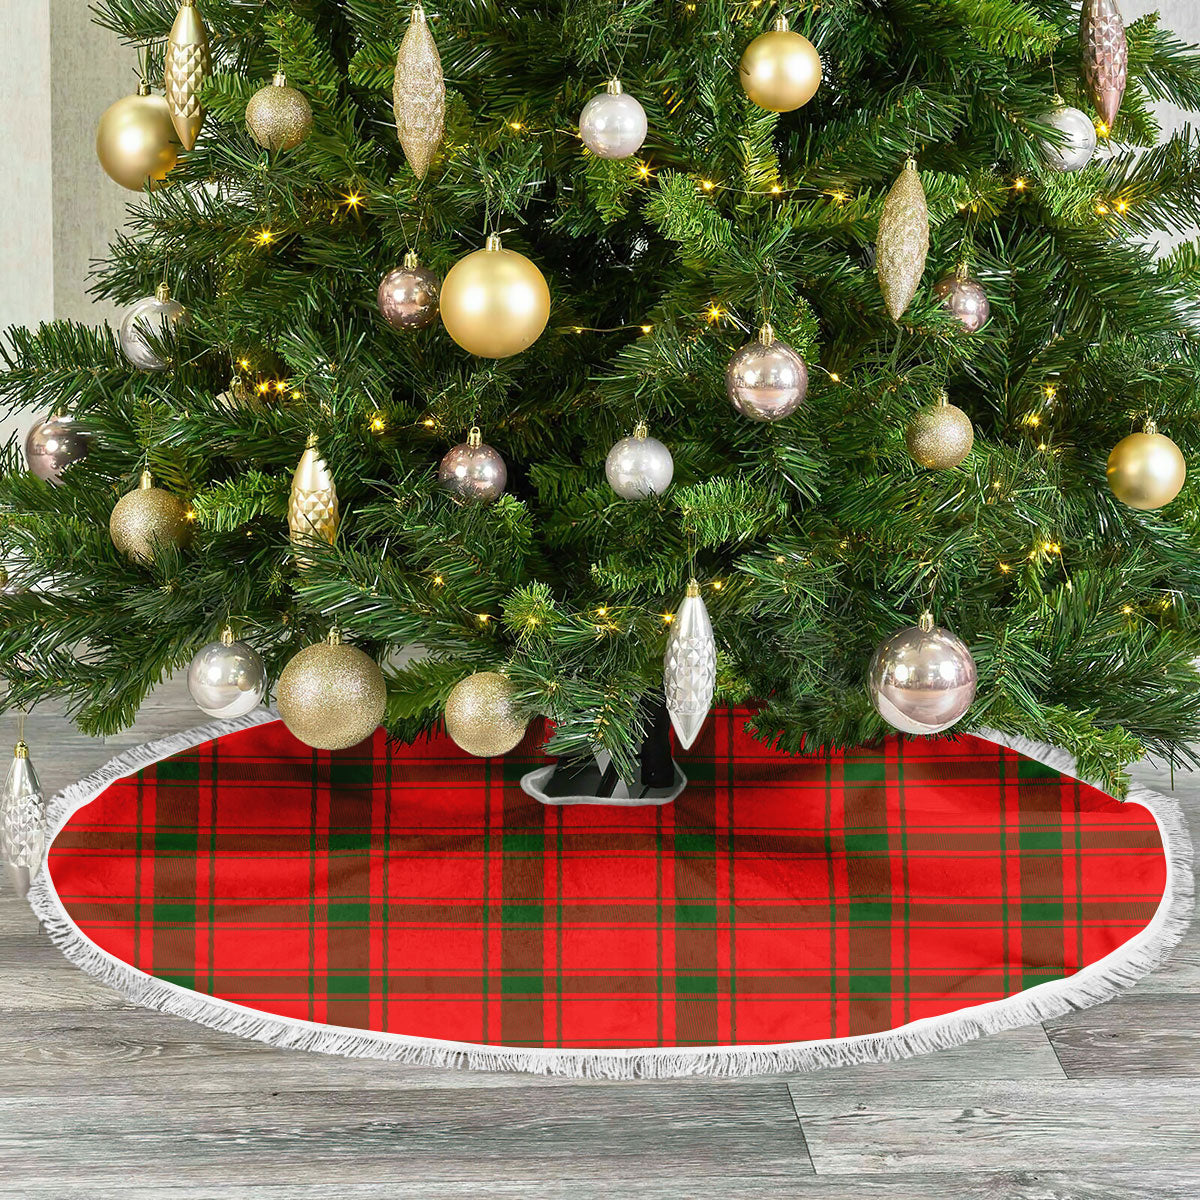 Darroch (Gourock) Tartan Christmas Tree Skirt